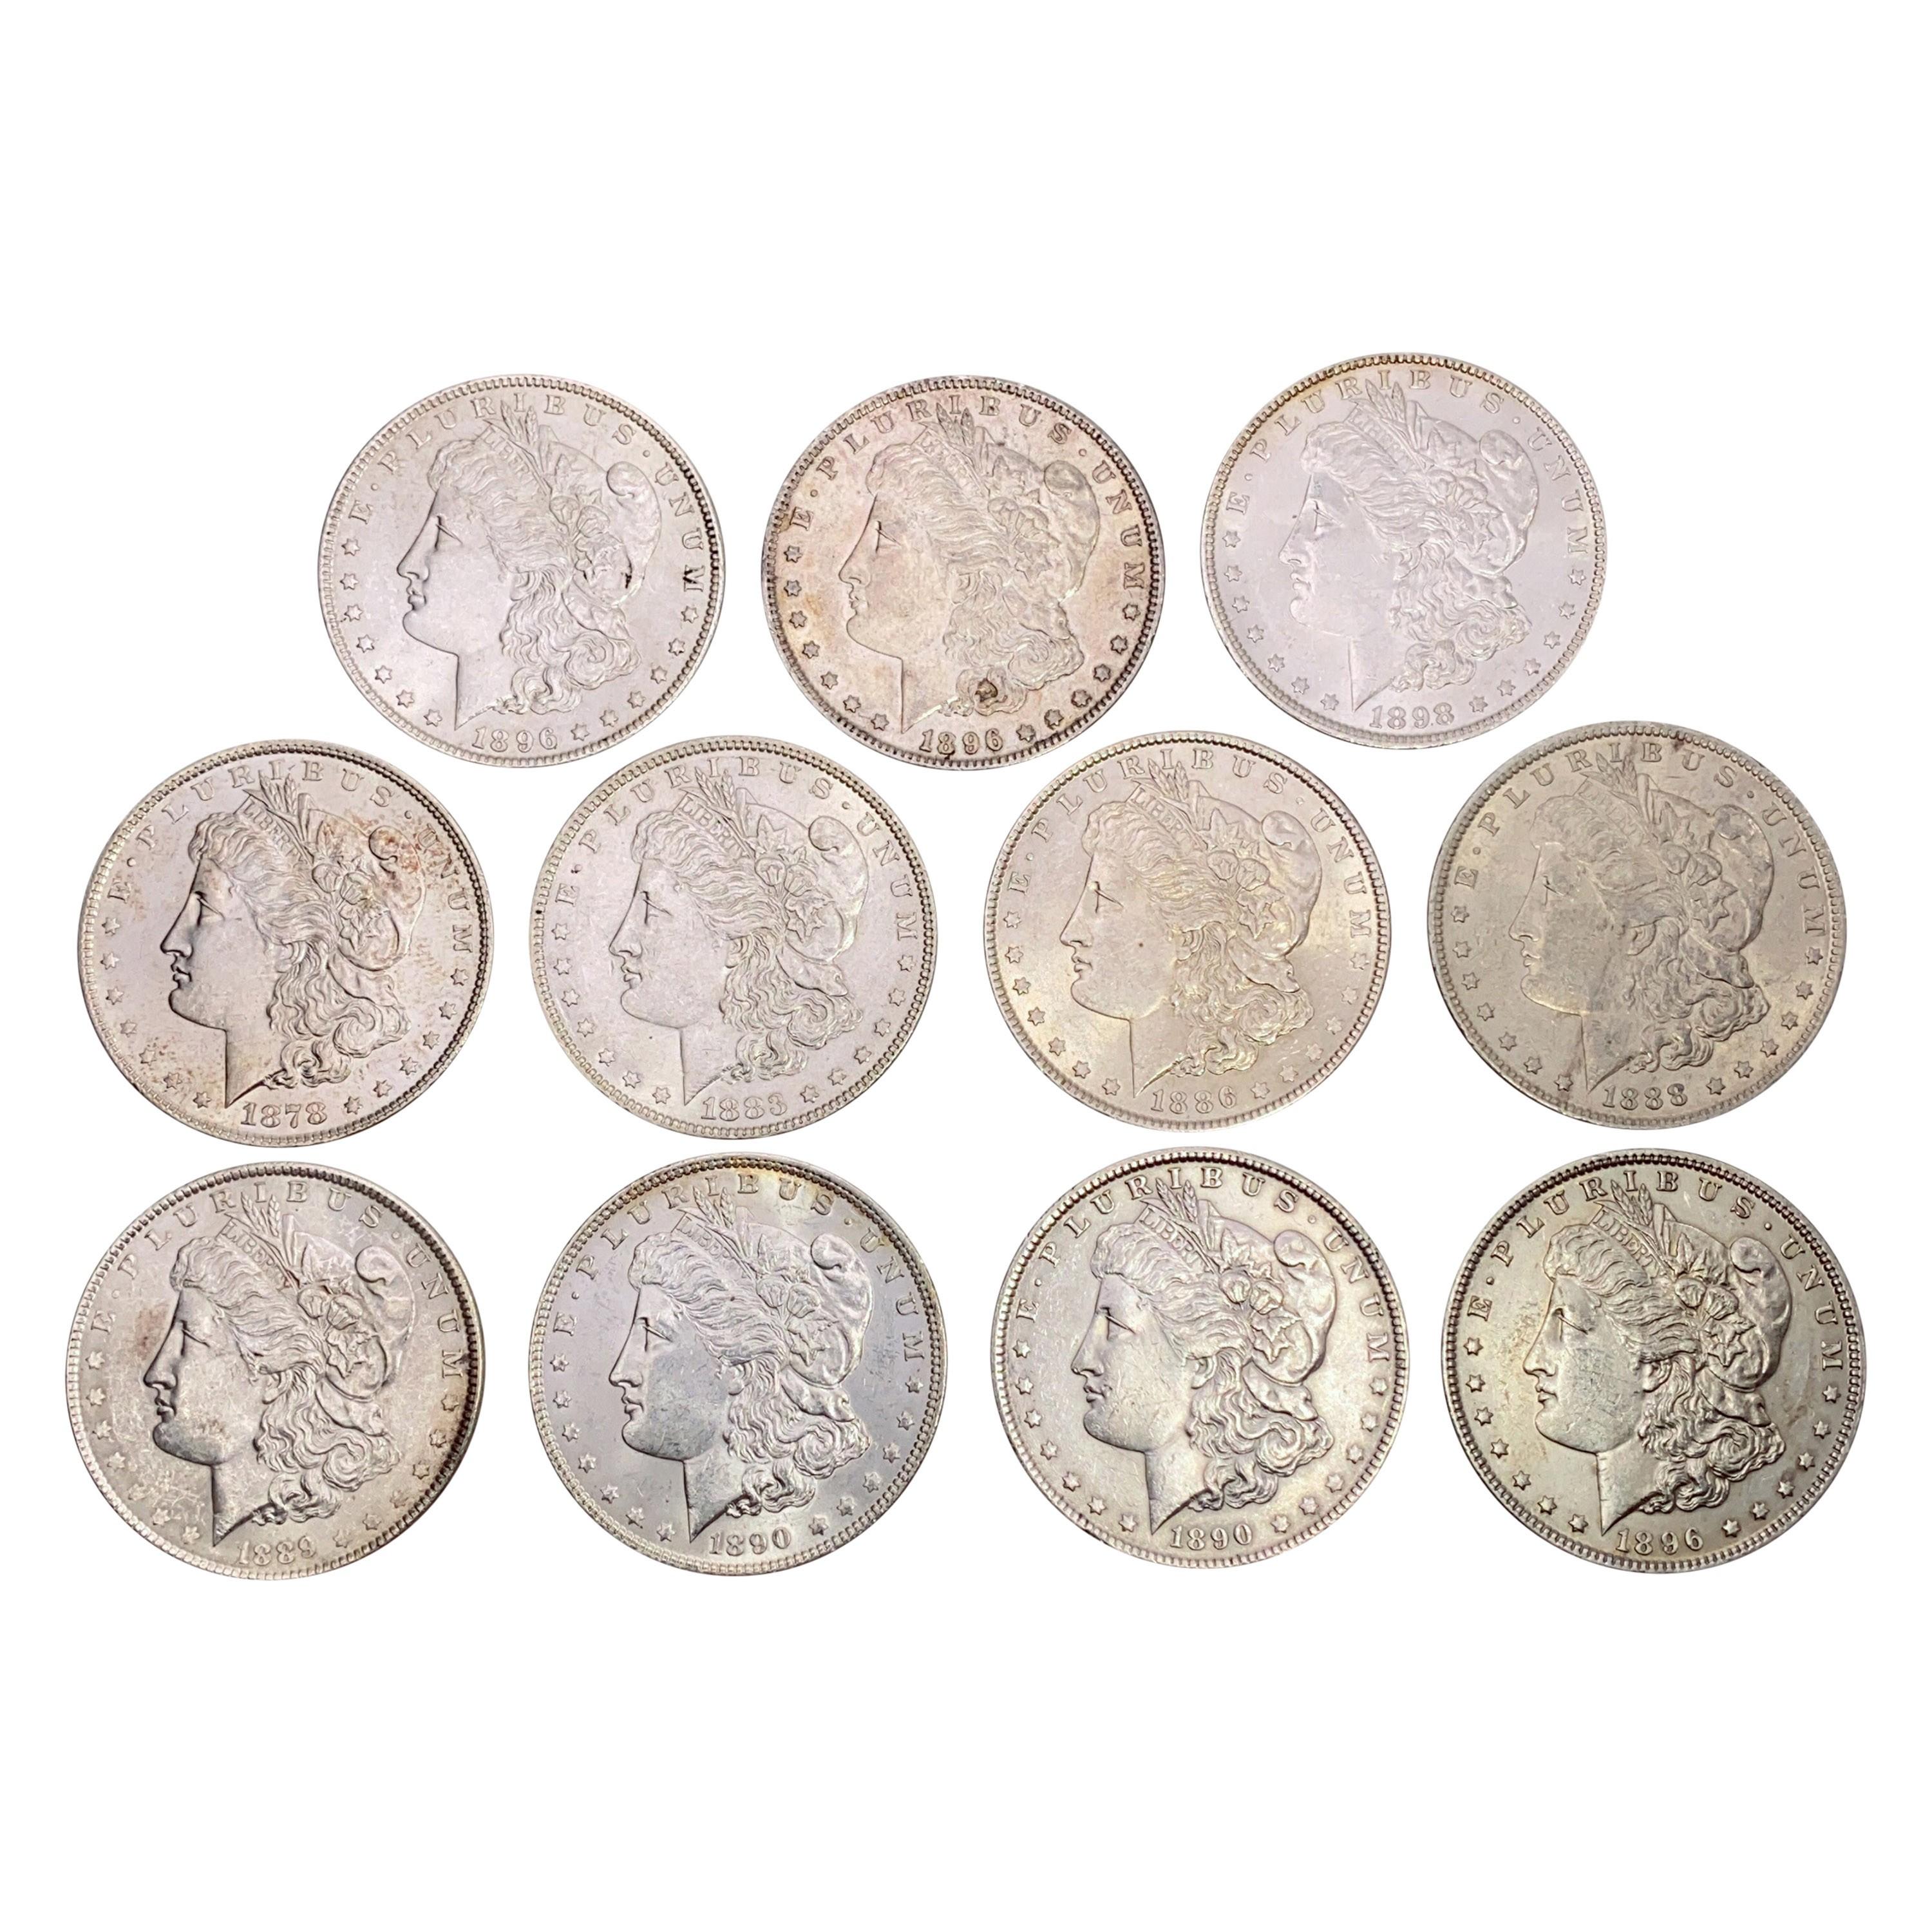 1878-1898 UNC Morgan Silver Dollars [11 Coins]